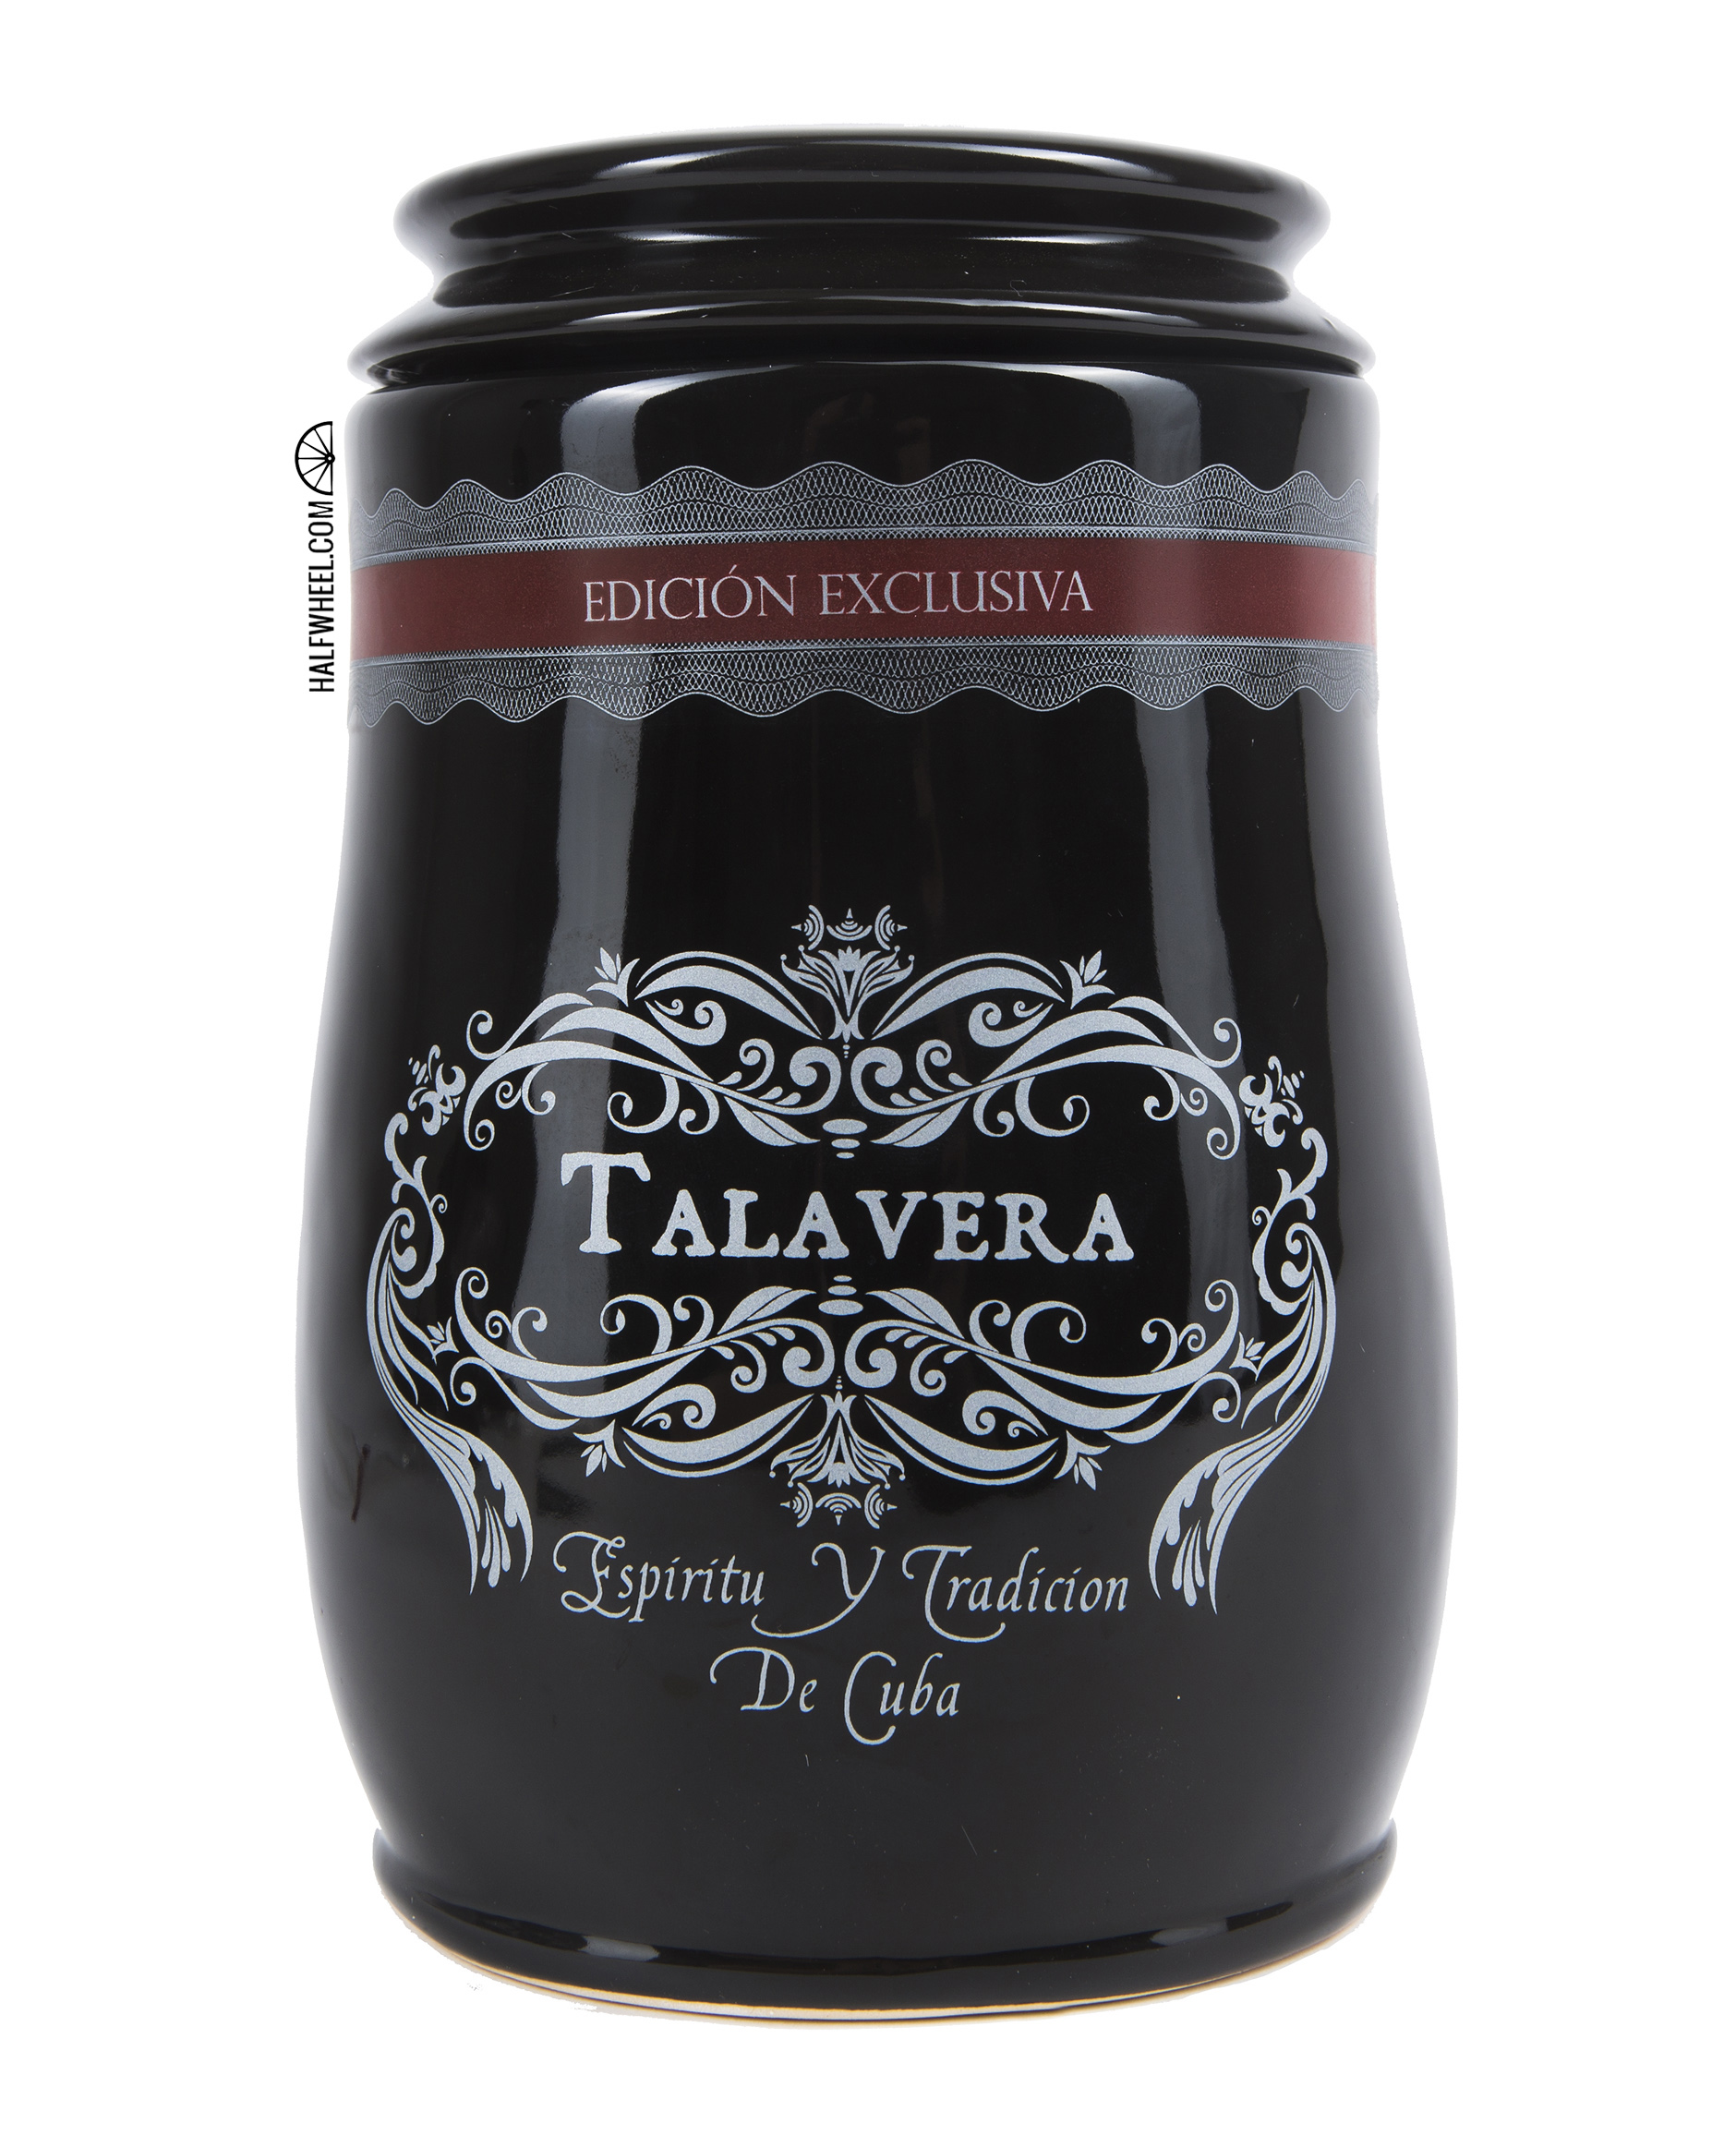 Talavera Edicion Exclusiva 2015 Corona Gorda Jar 1